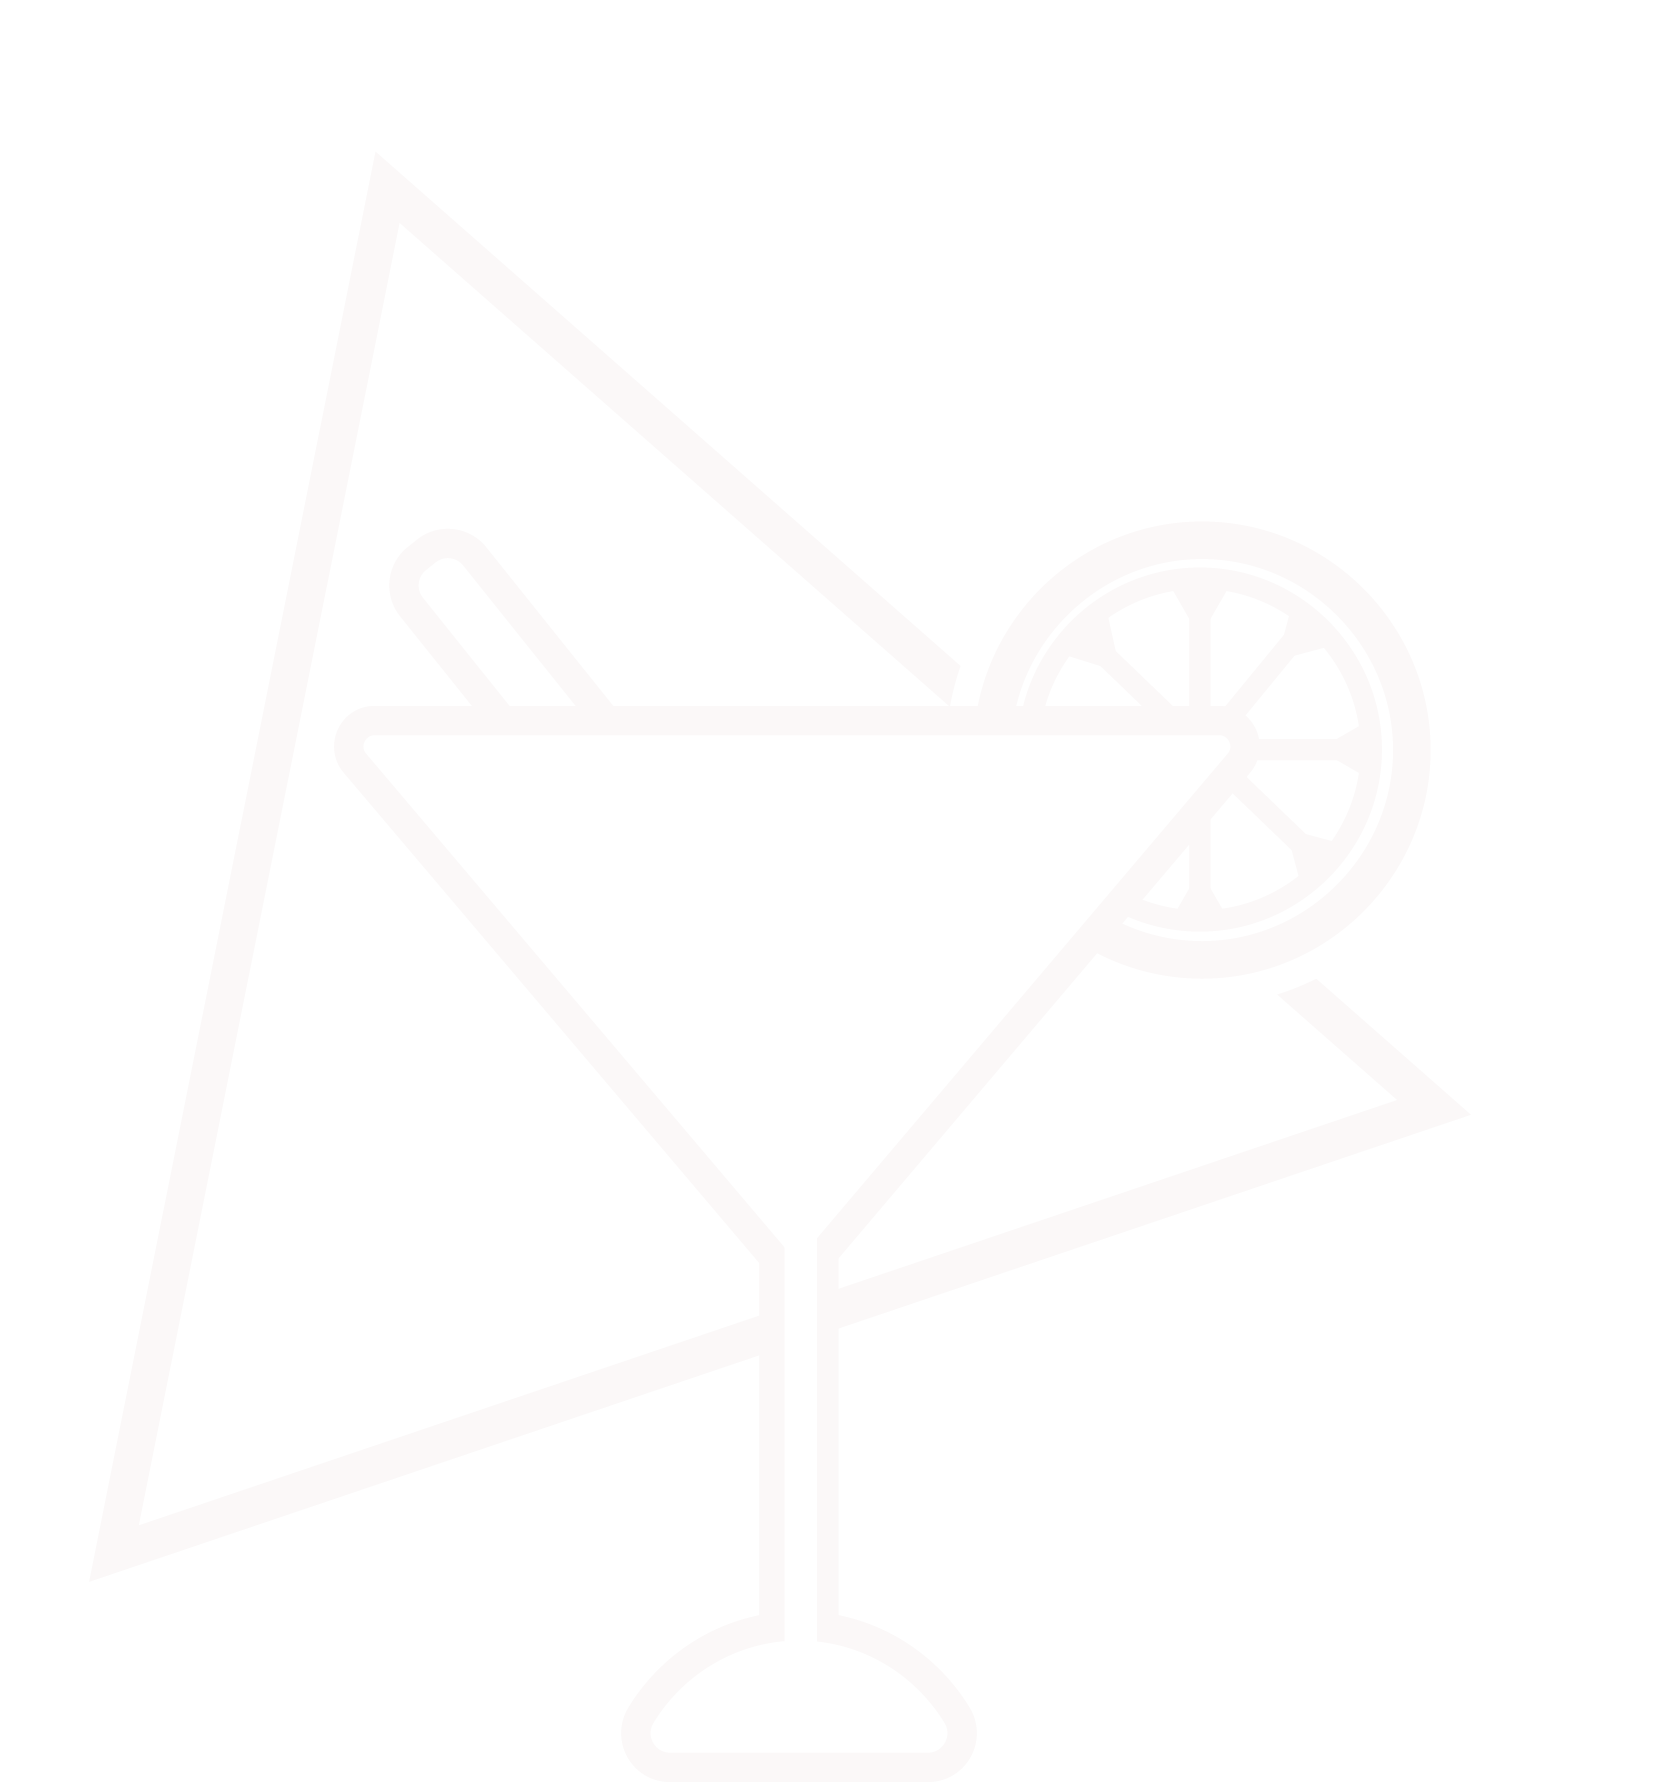 martini{_triangle_WHITE.png